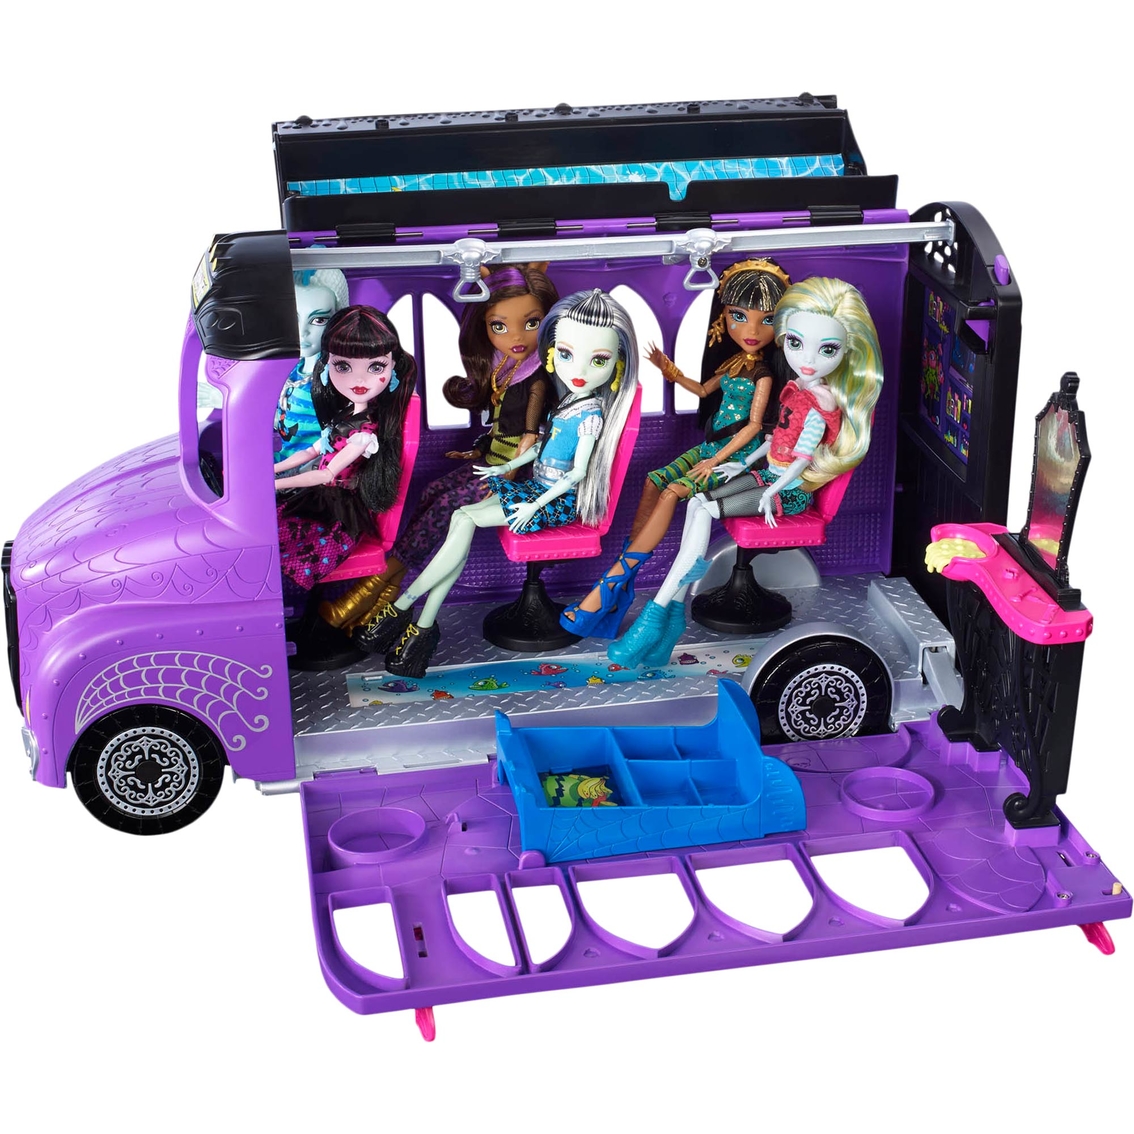 Mattel Monster High Deluxe School Bus - Image 2 of 3